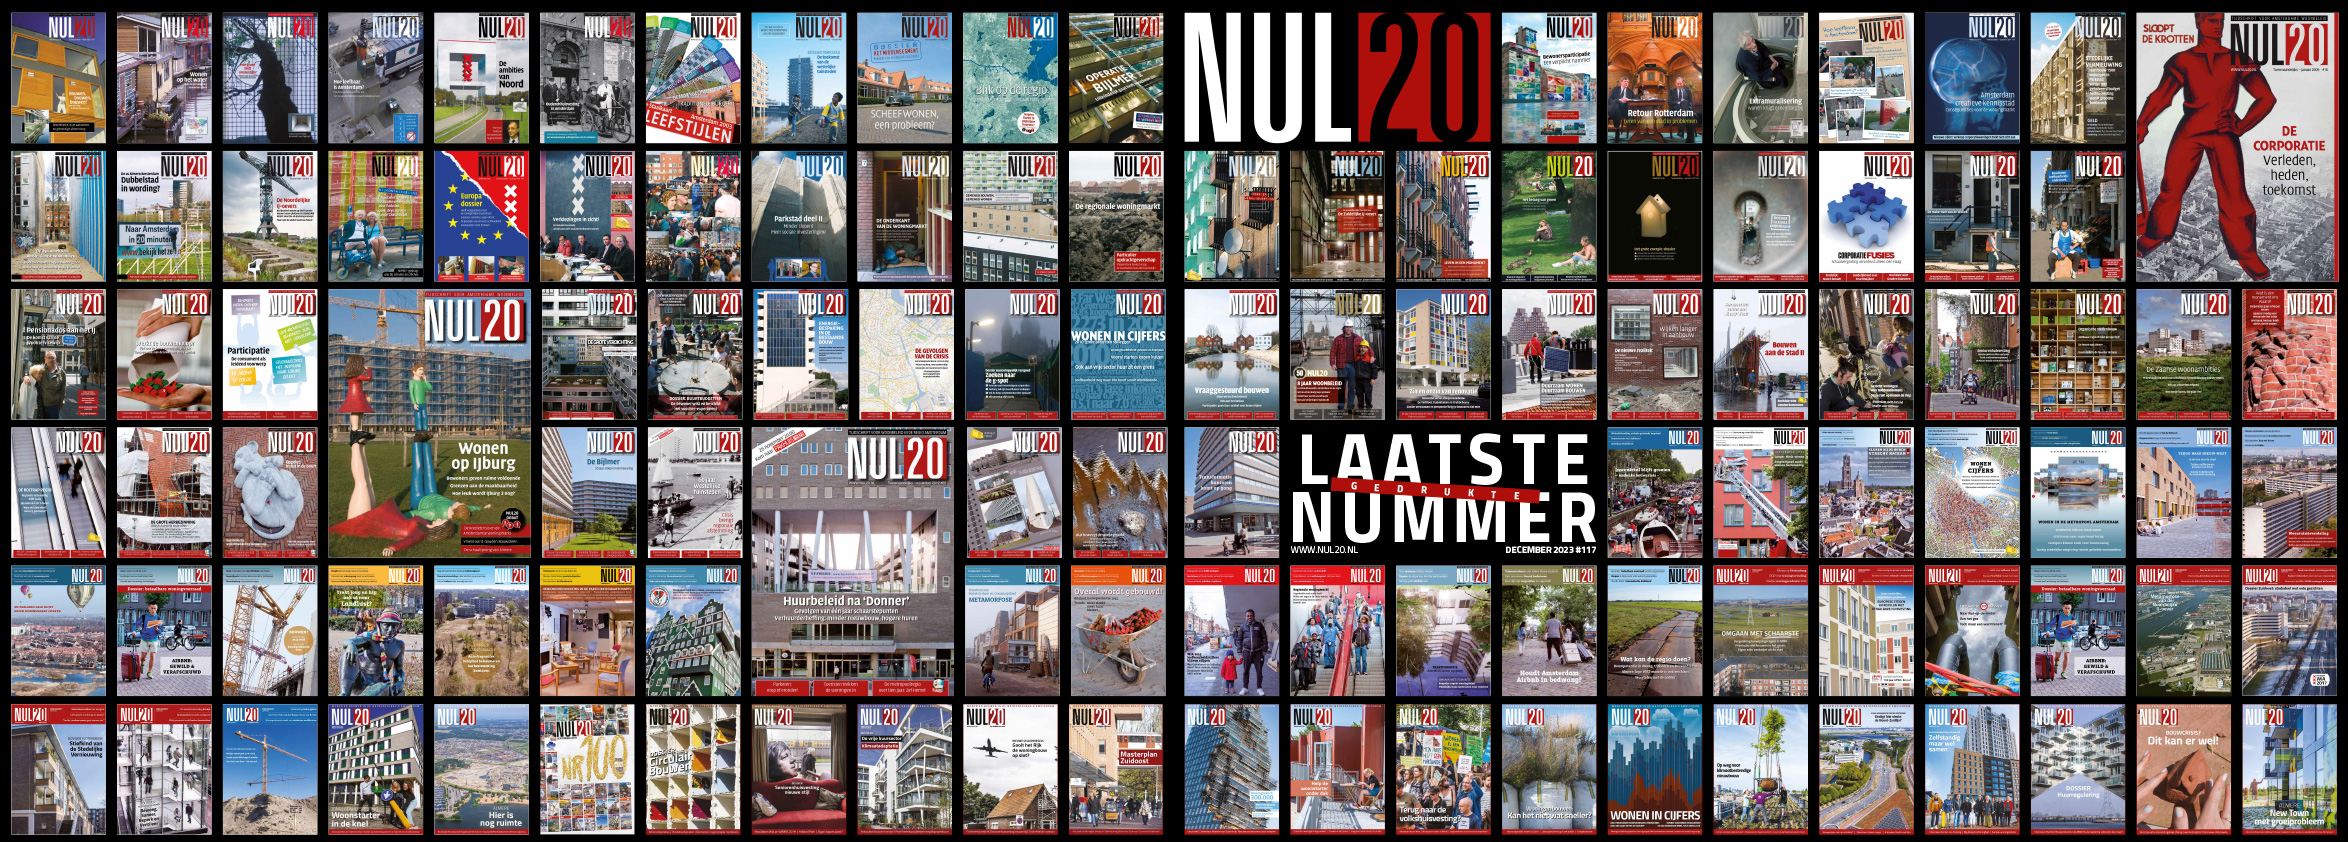 Alle covers van de verschenen NUL20-edities